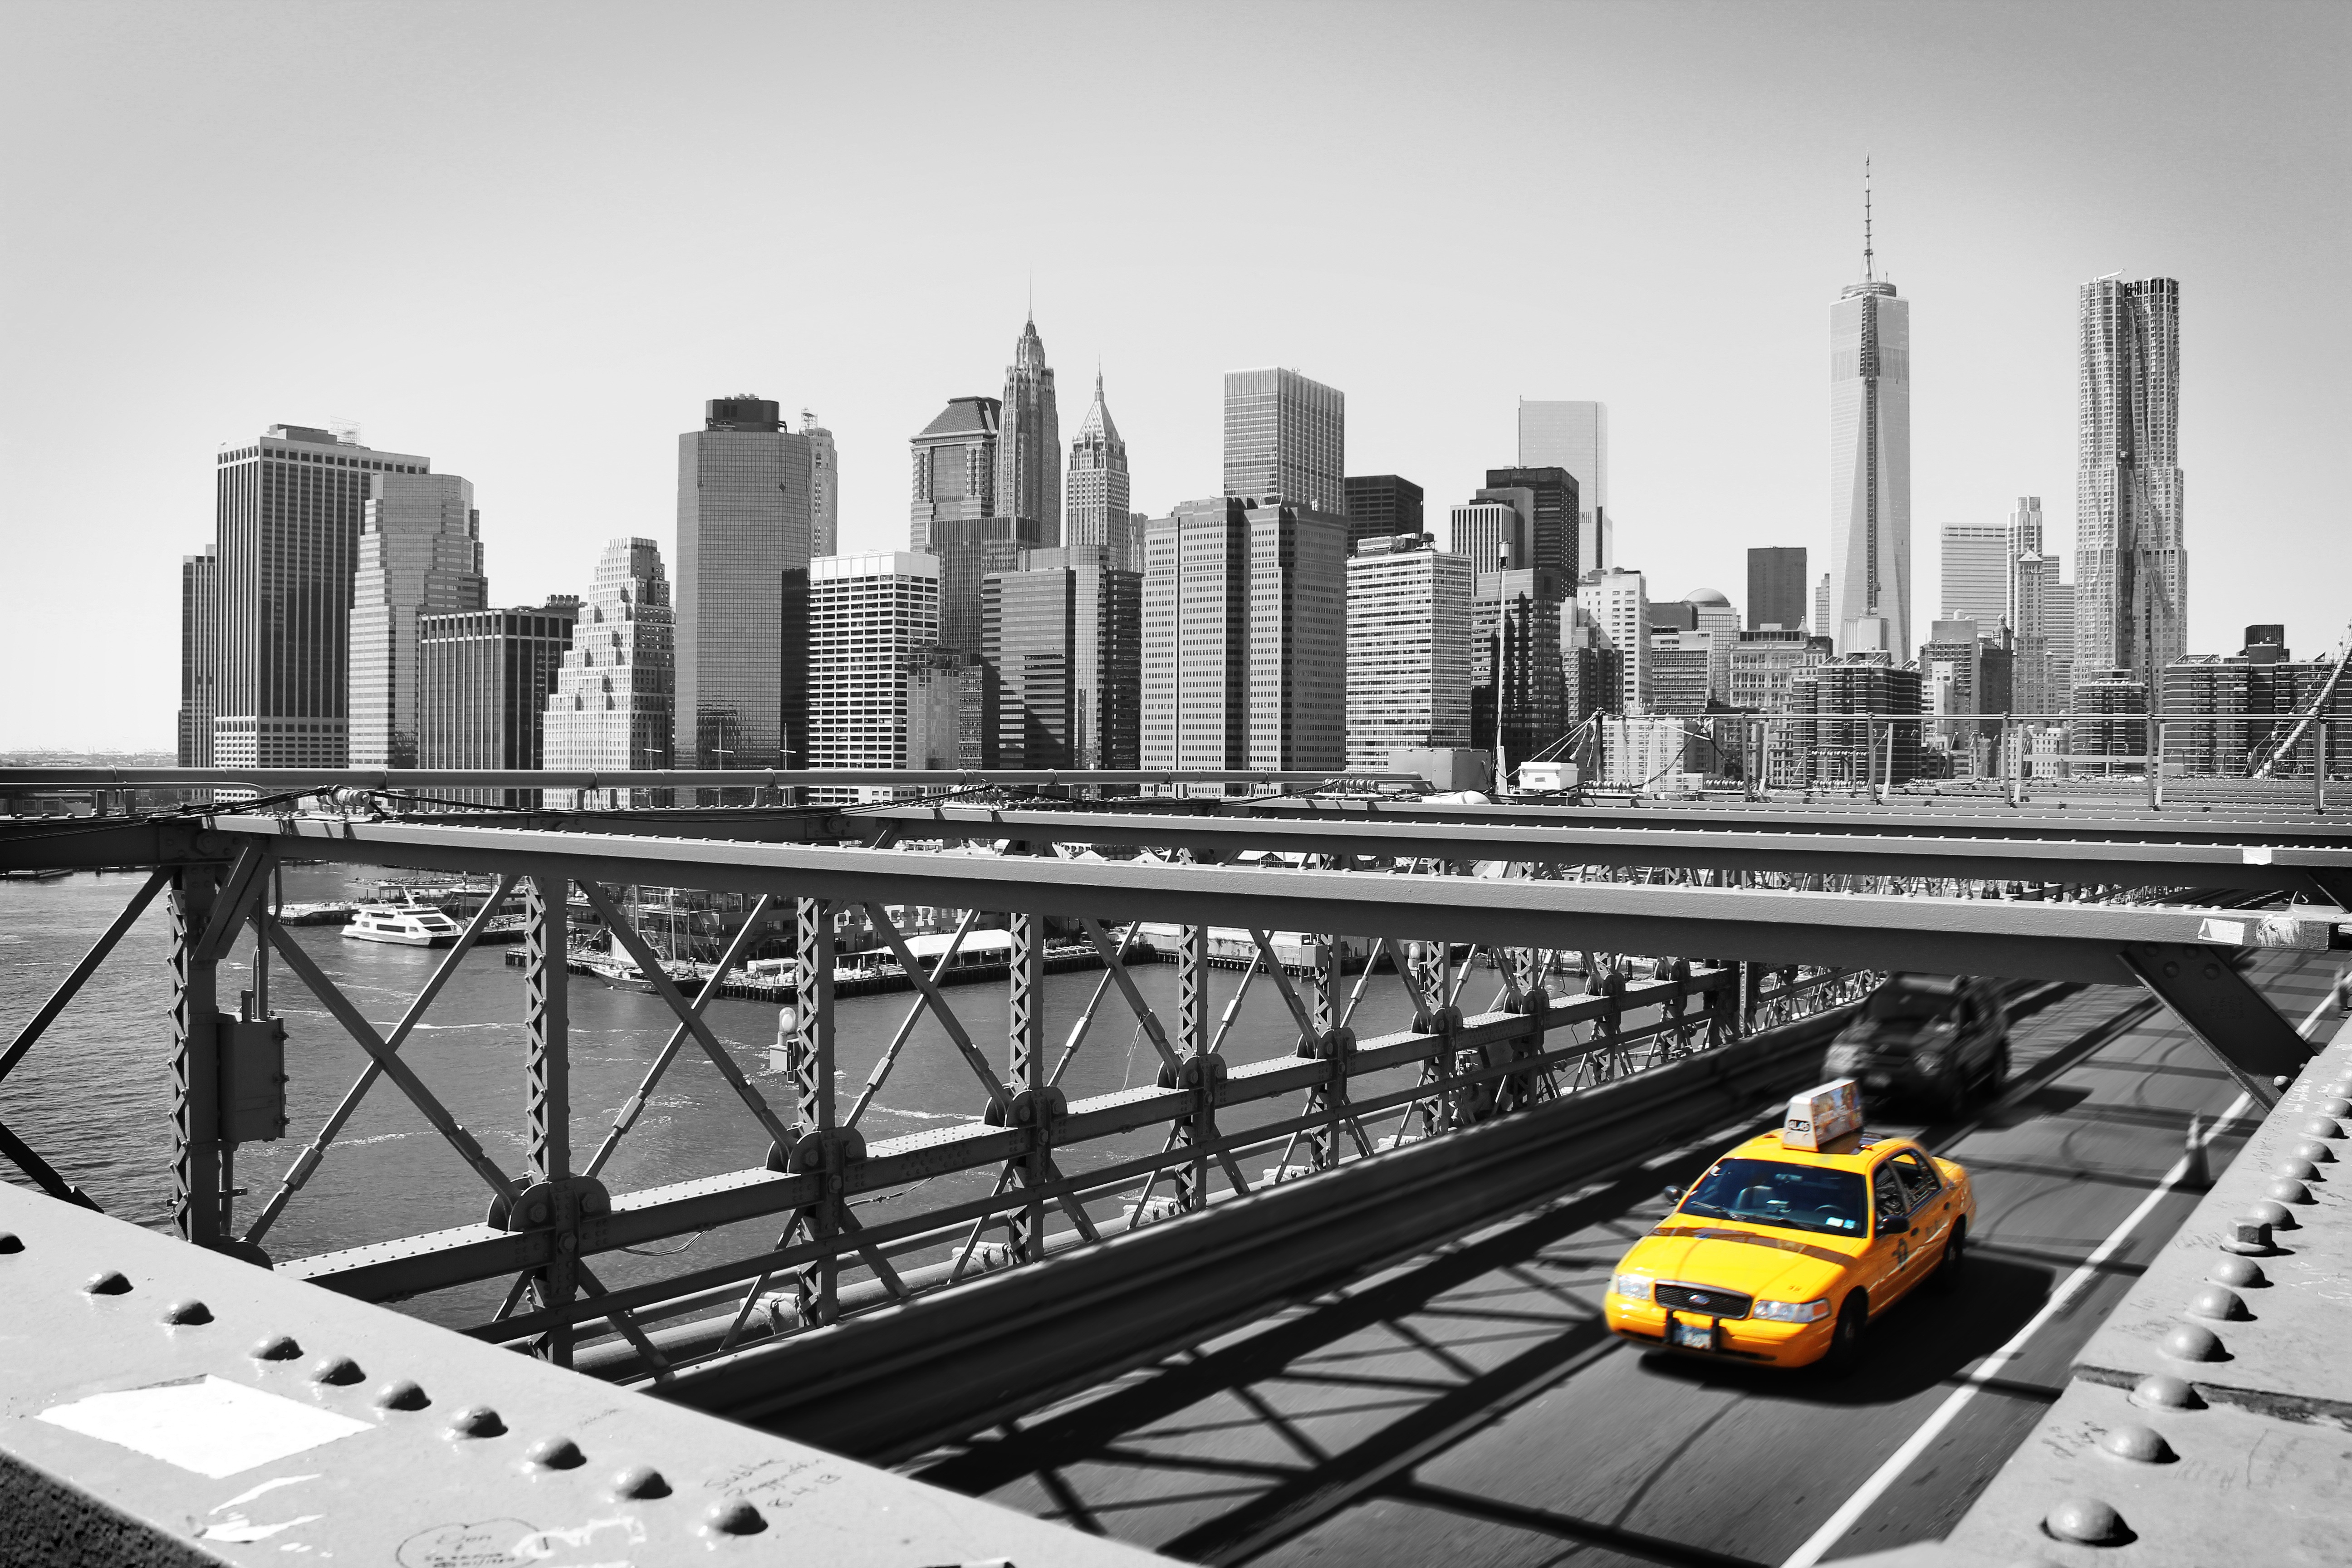 A cab in Manhattan in a monochrome photo